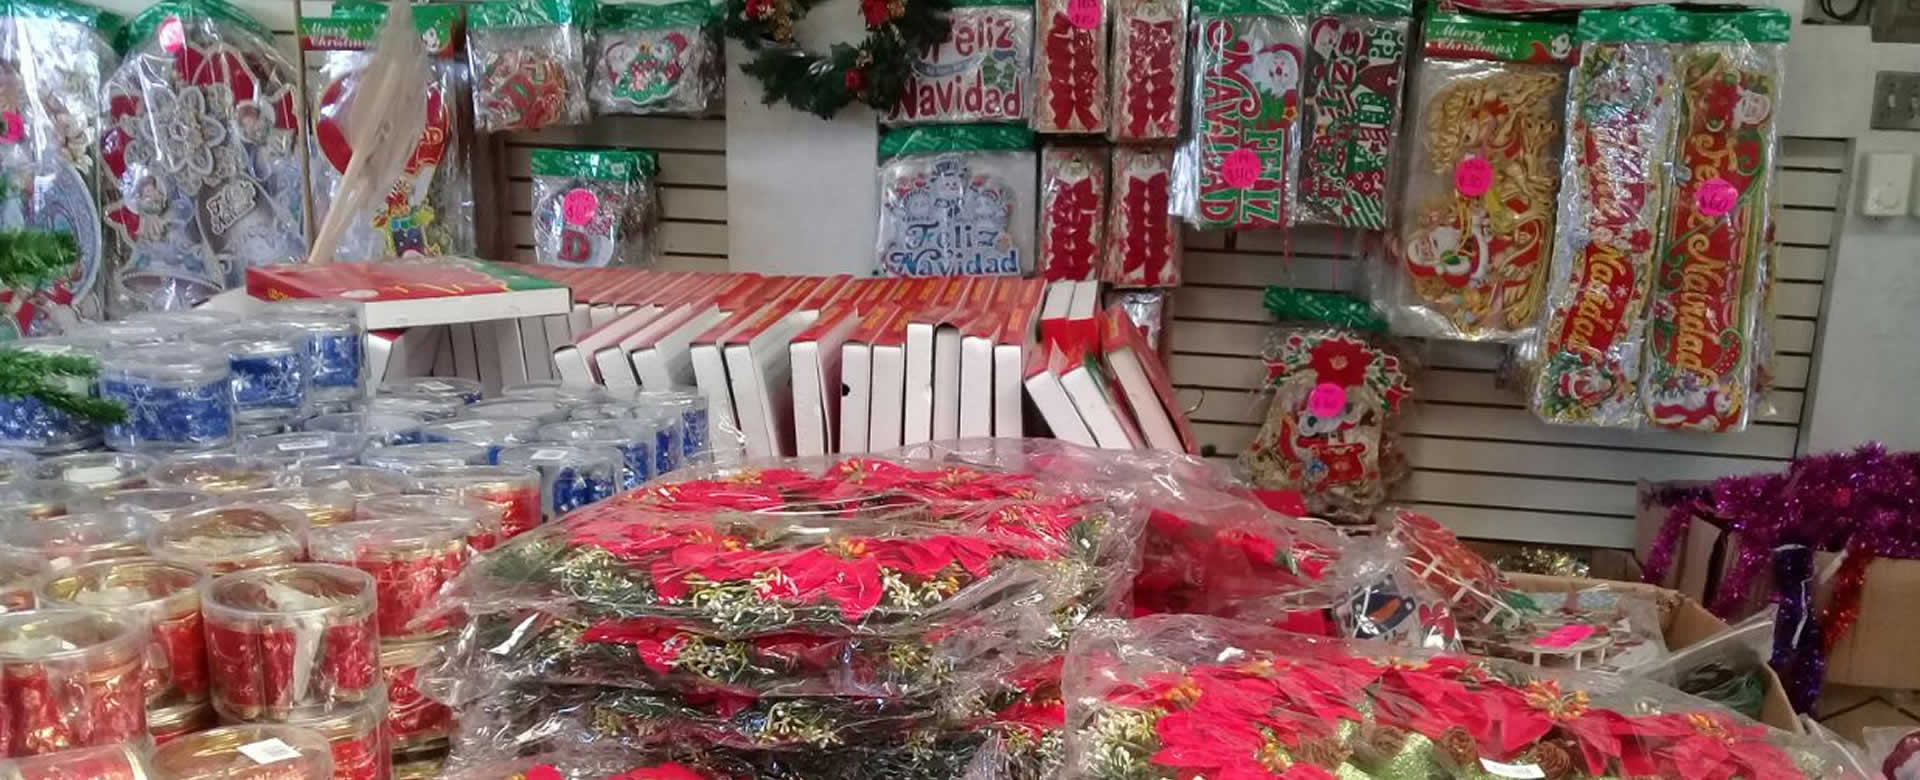 Anuncian ferias navideñas de descuentos en todos los mercados de Managua